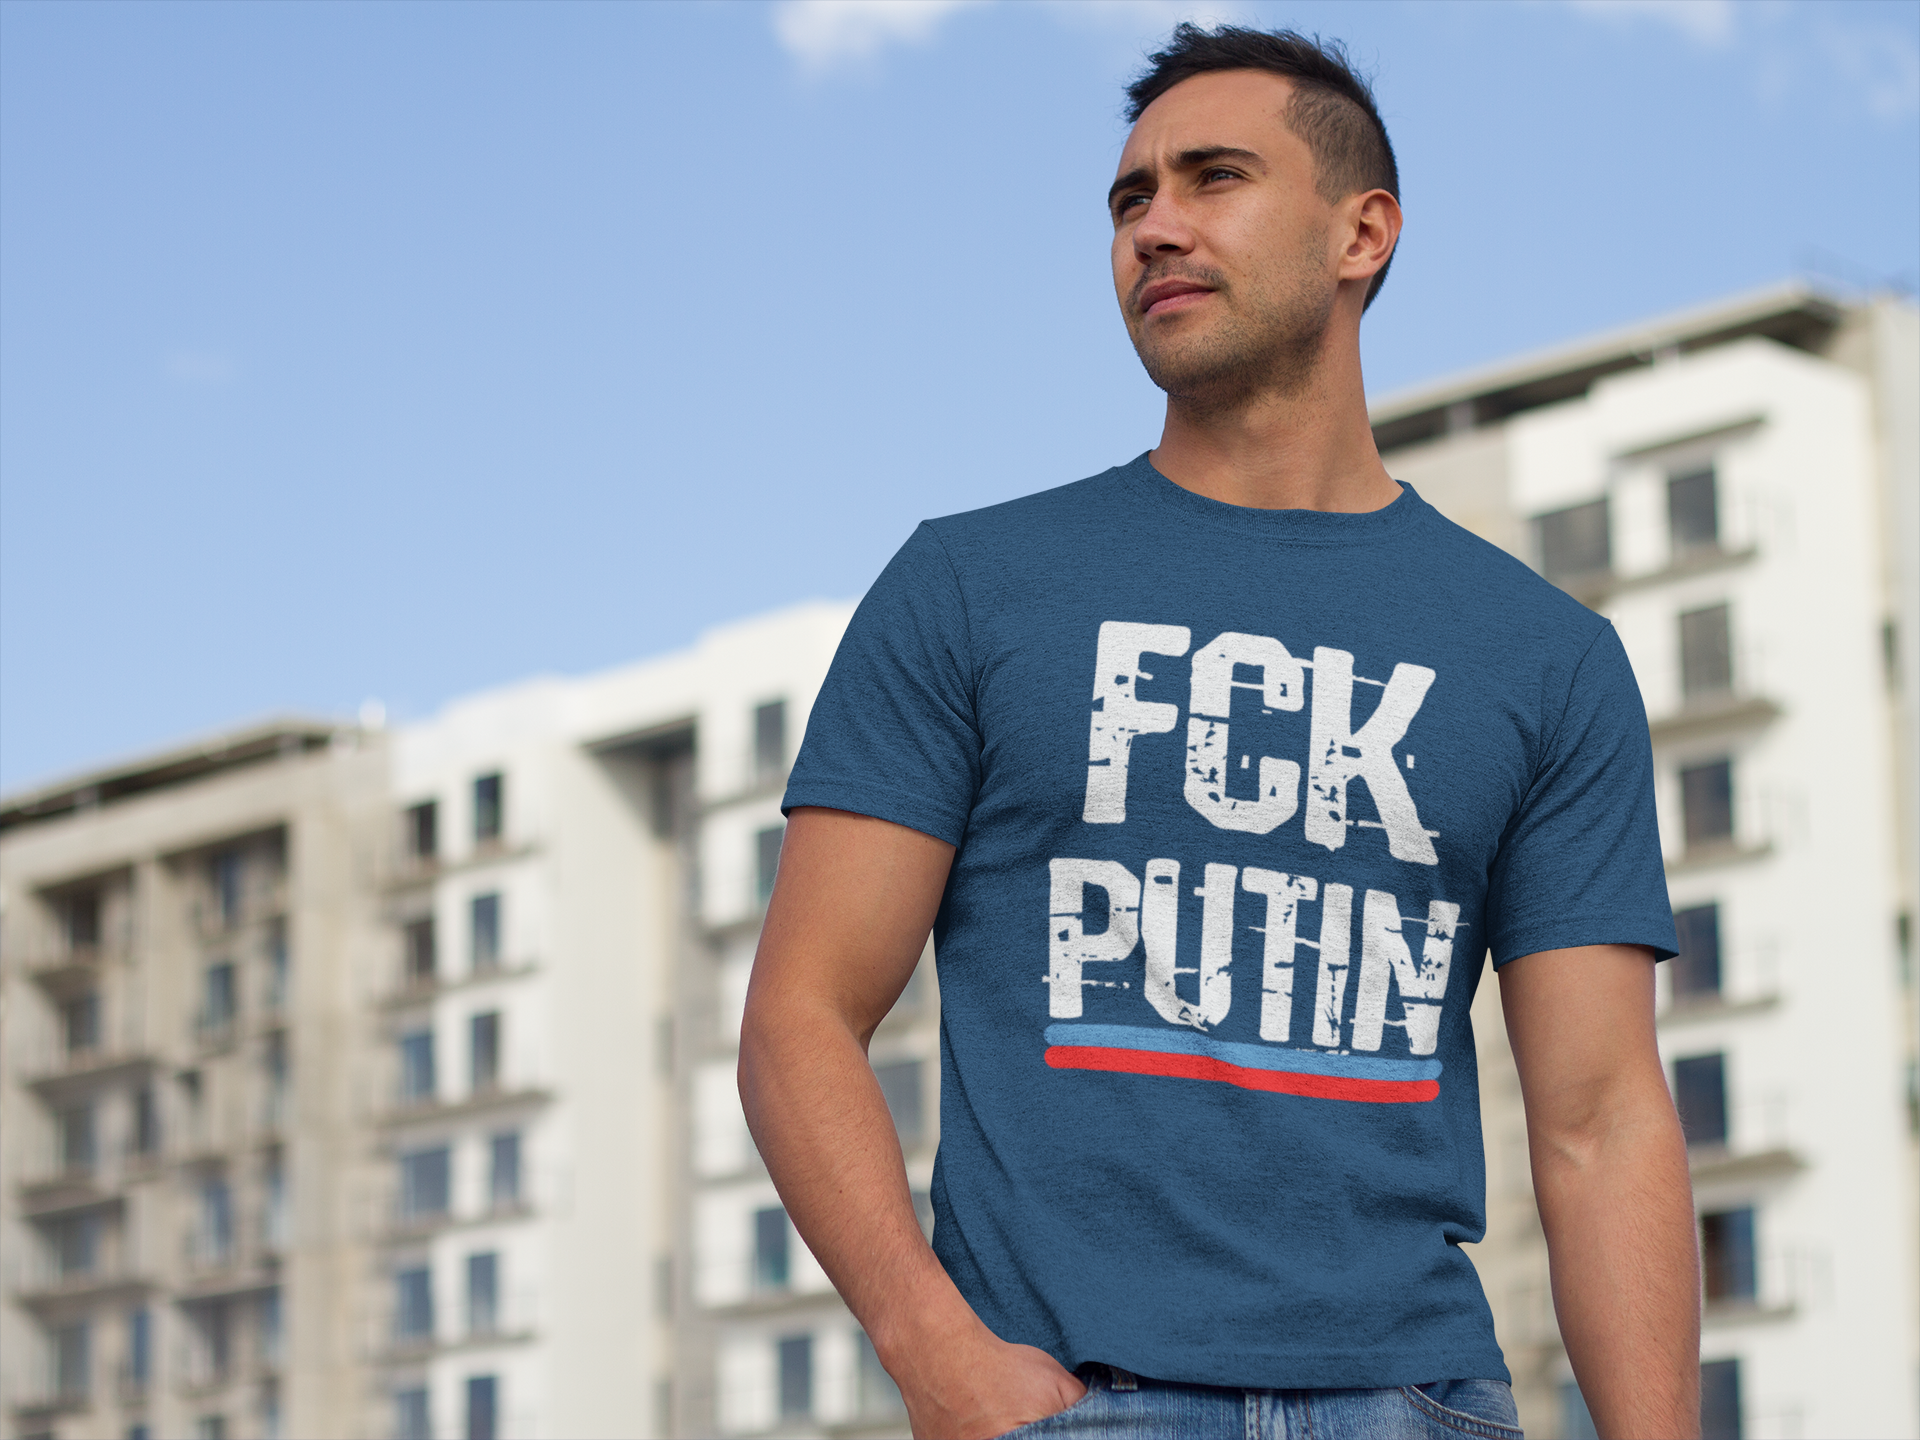 Gillar du inte Putin? Då är detta tröjan för dig. Tshirt med text FCK Putin